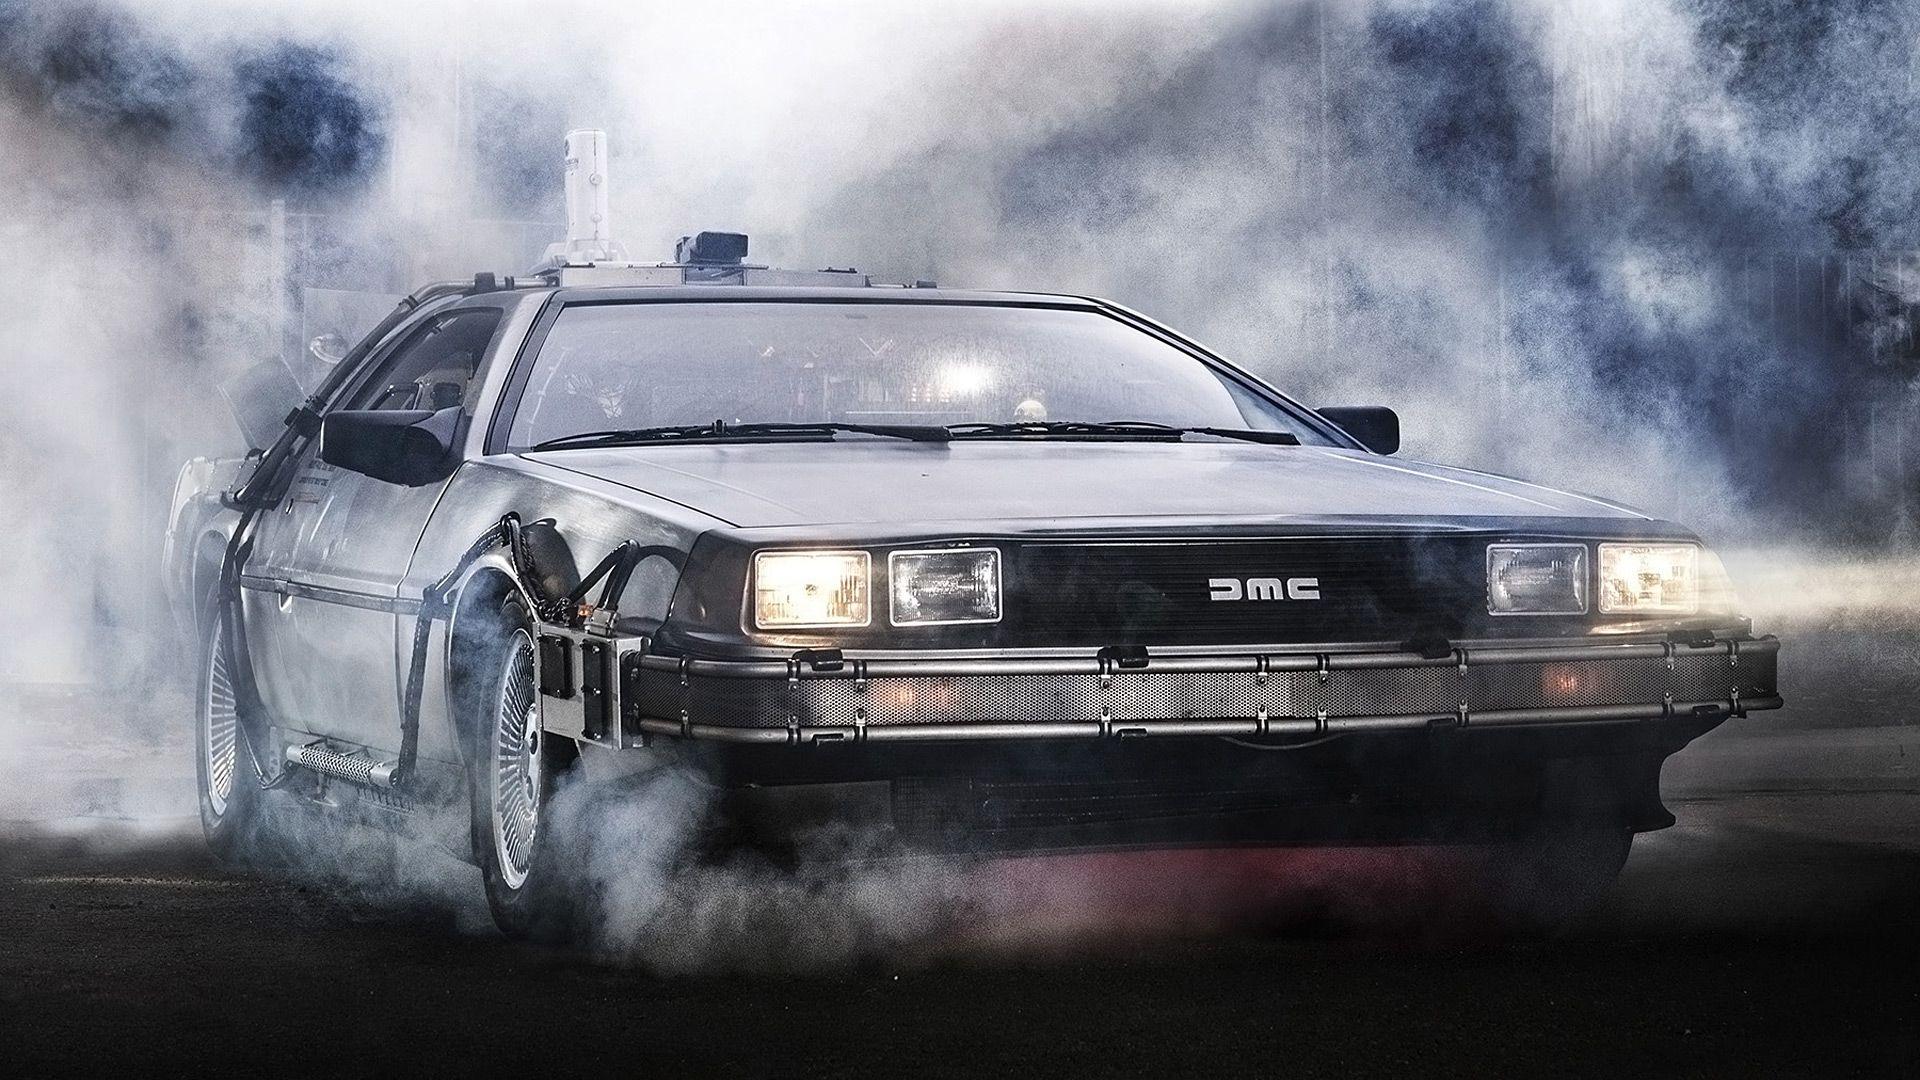 DeLorean DMC 12 'Back To The Future' Wallpaper & HD Image